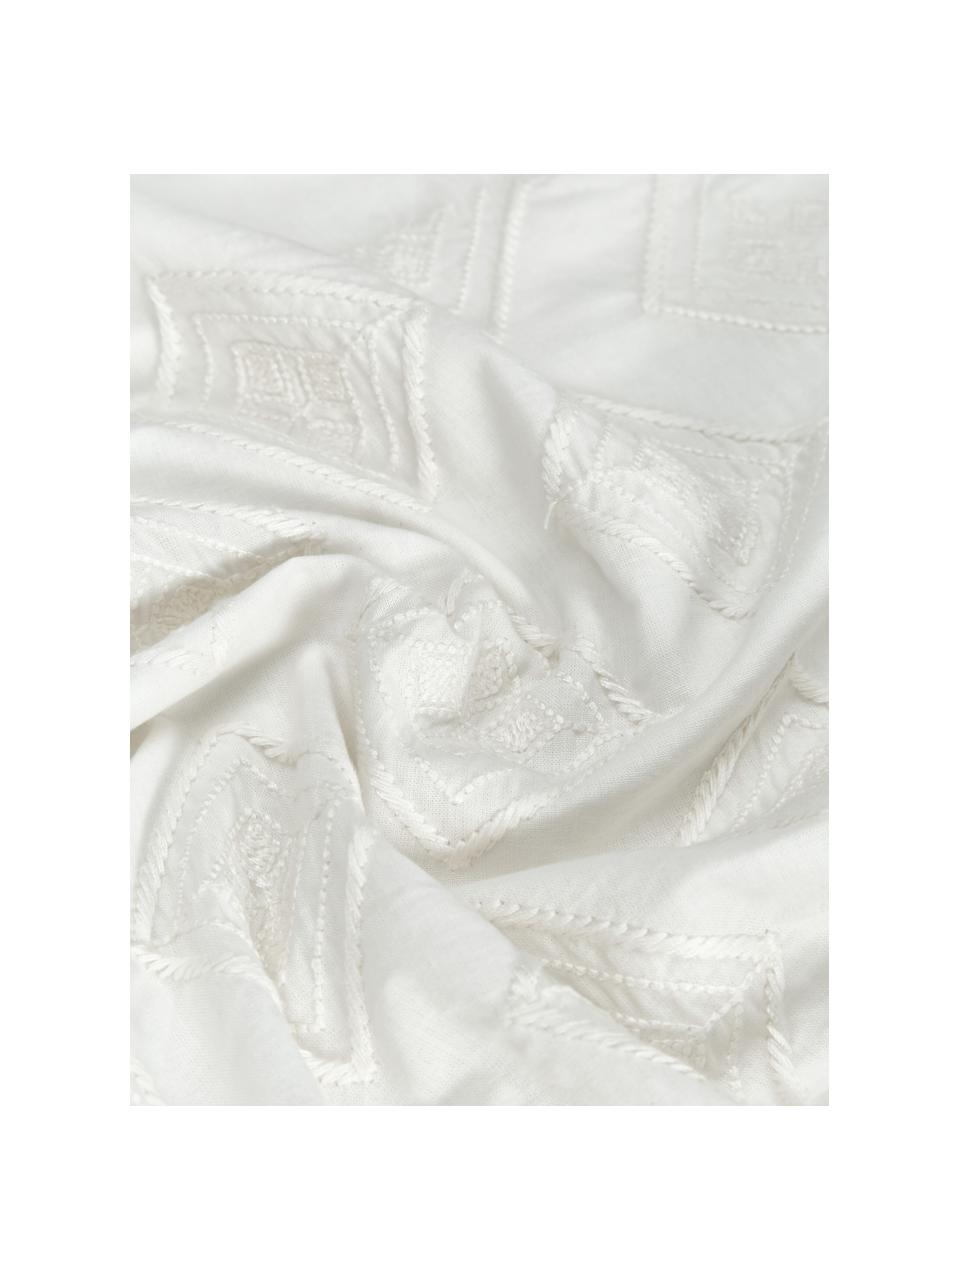 Funda de almohada bordada de algodón Elaine, 100% algodón

Densidad de hilo 140 TC, calidad estándar

El algodón da una sensación agradable y suave en la piel, absorbe bien la humedad y es adecuado para personas alérgicas, Blanco estampado, An 45 x L 110 cm